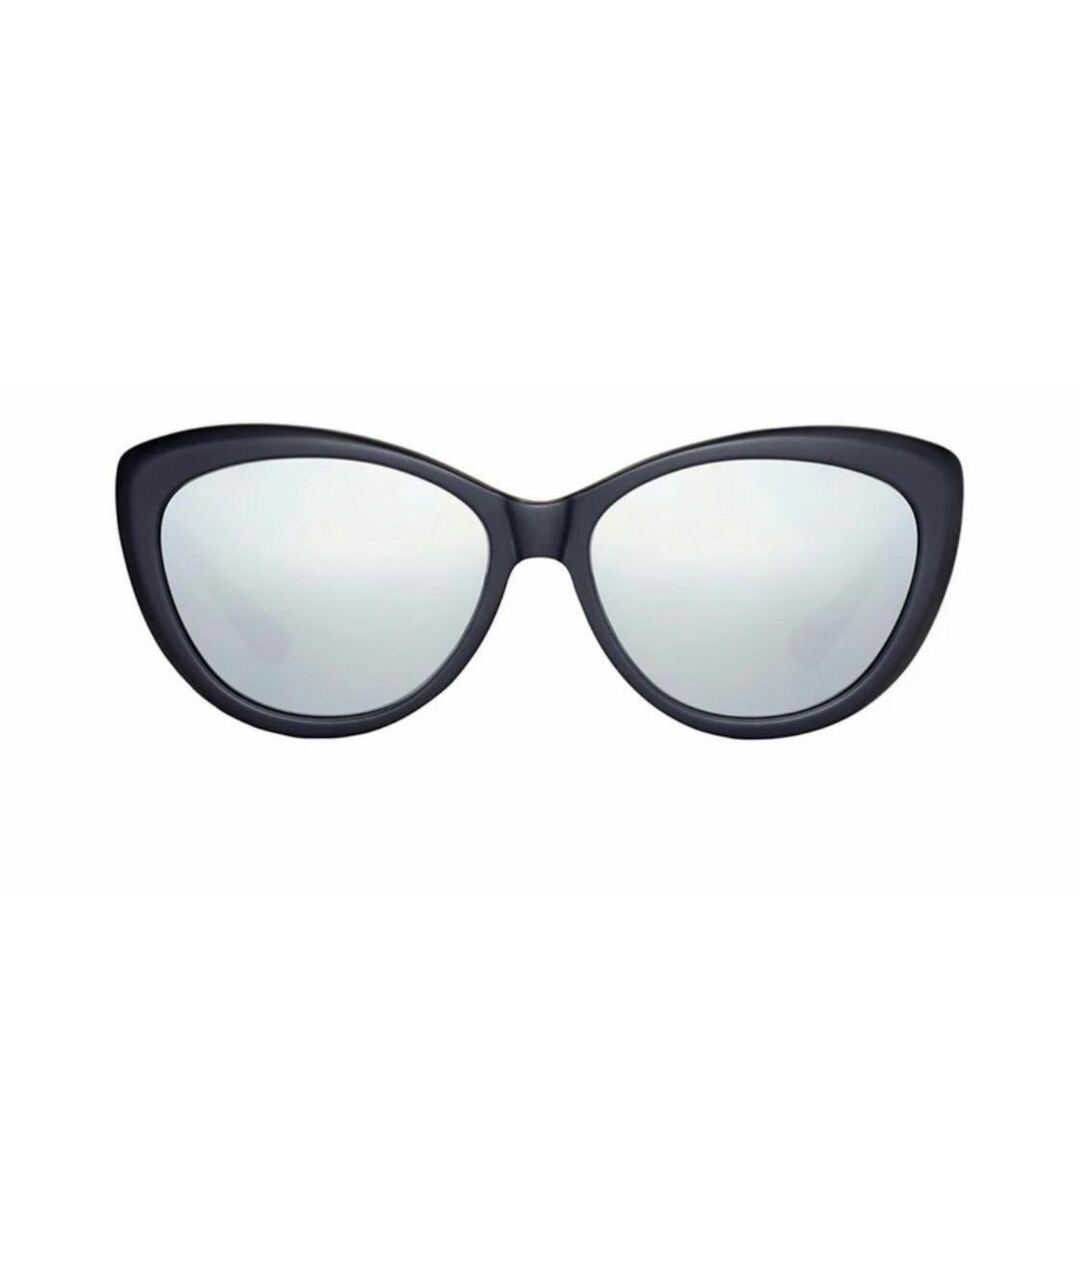 TAYLOR Черные пластиковые солнцезащитные очки, фото 1